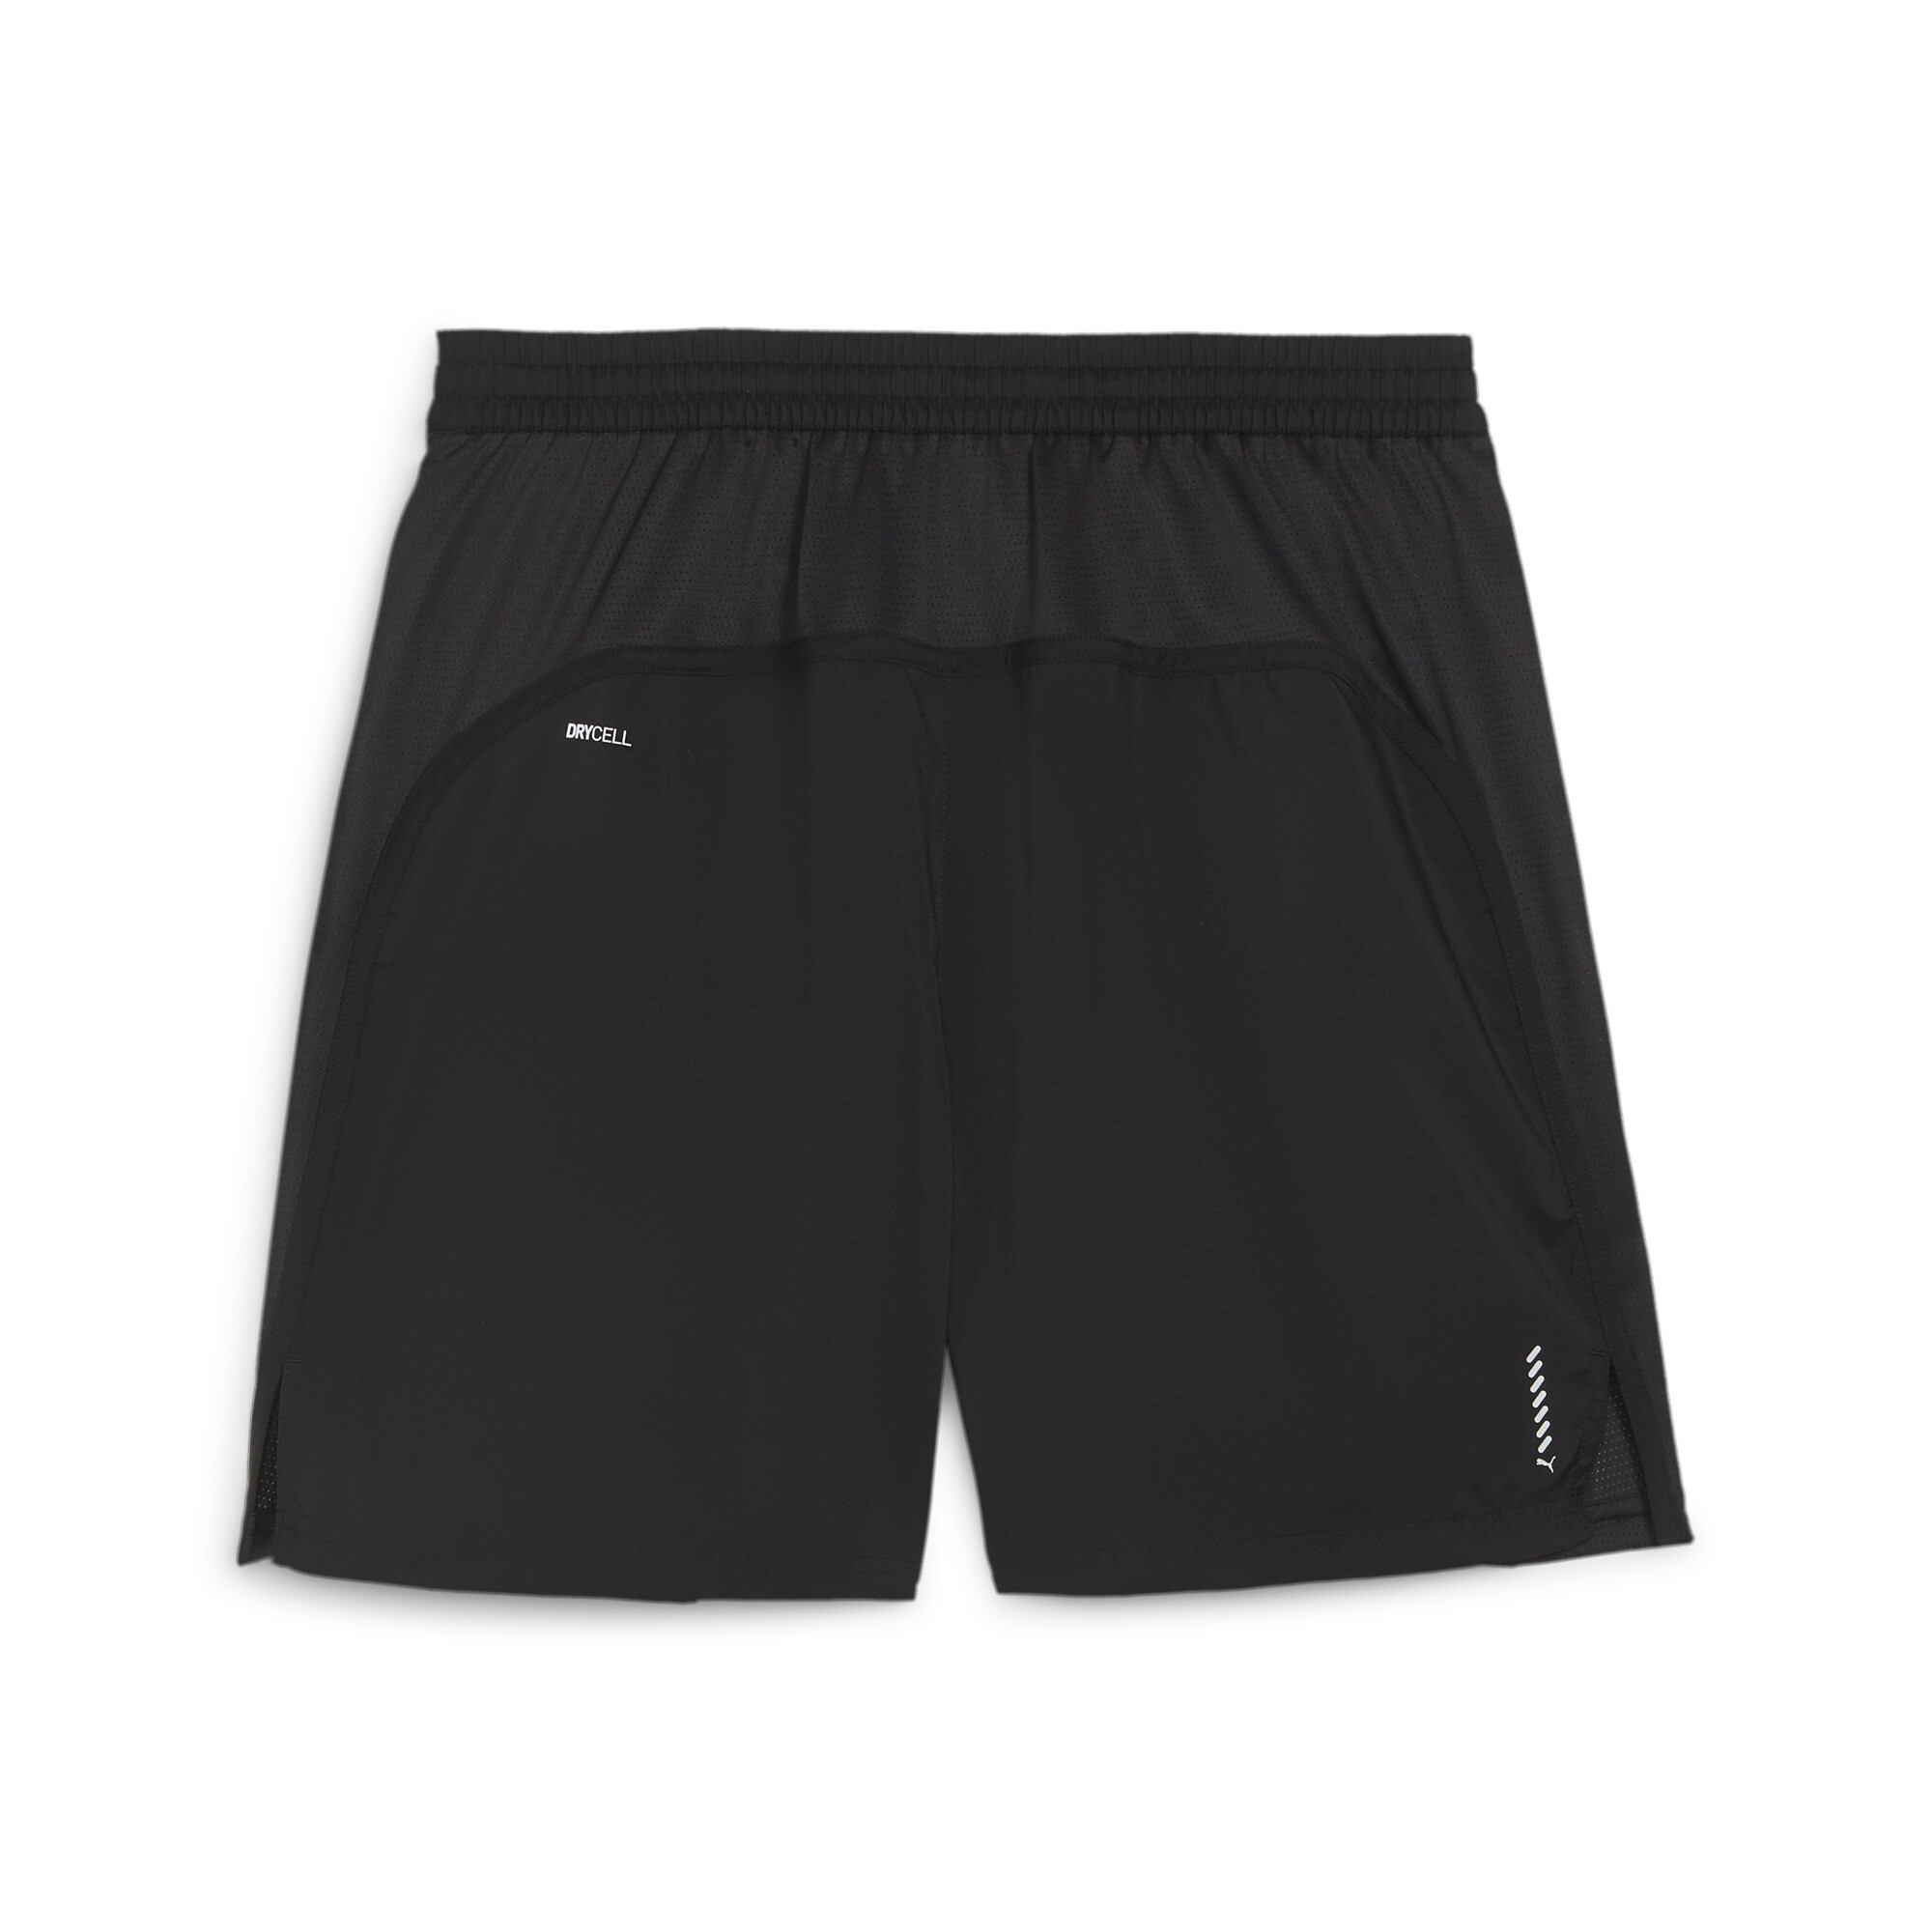 Men's PUMA RUN FAV VELOCITY 7 Running Shorts In Black, Size XS